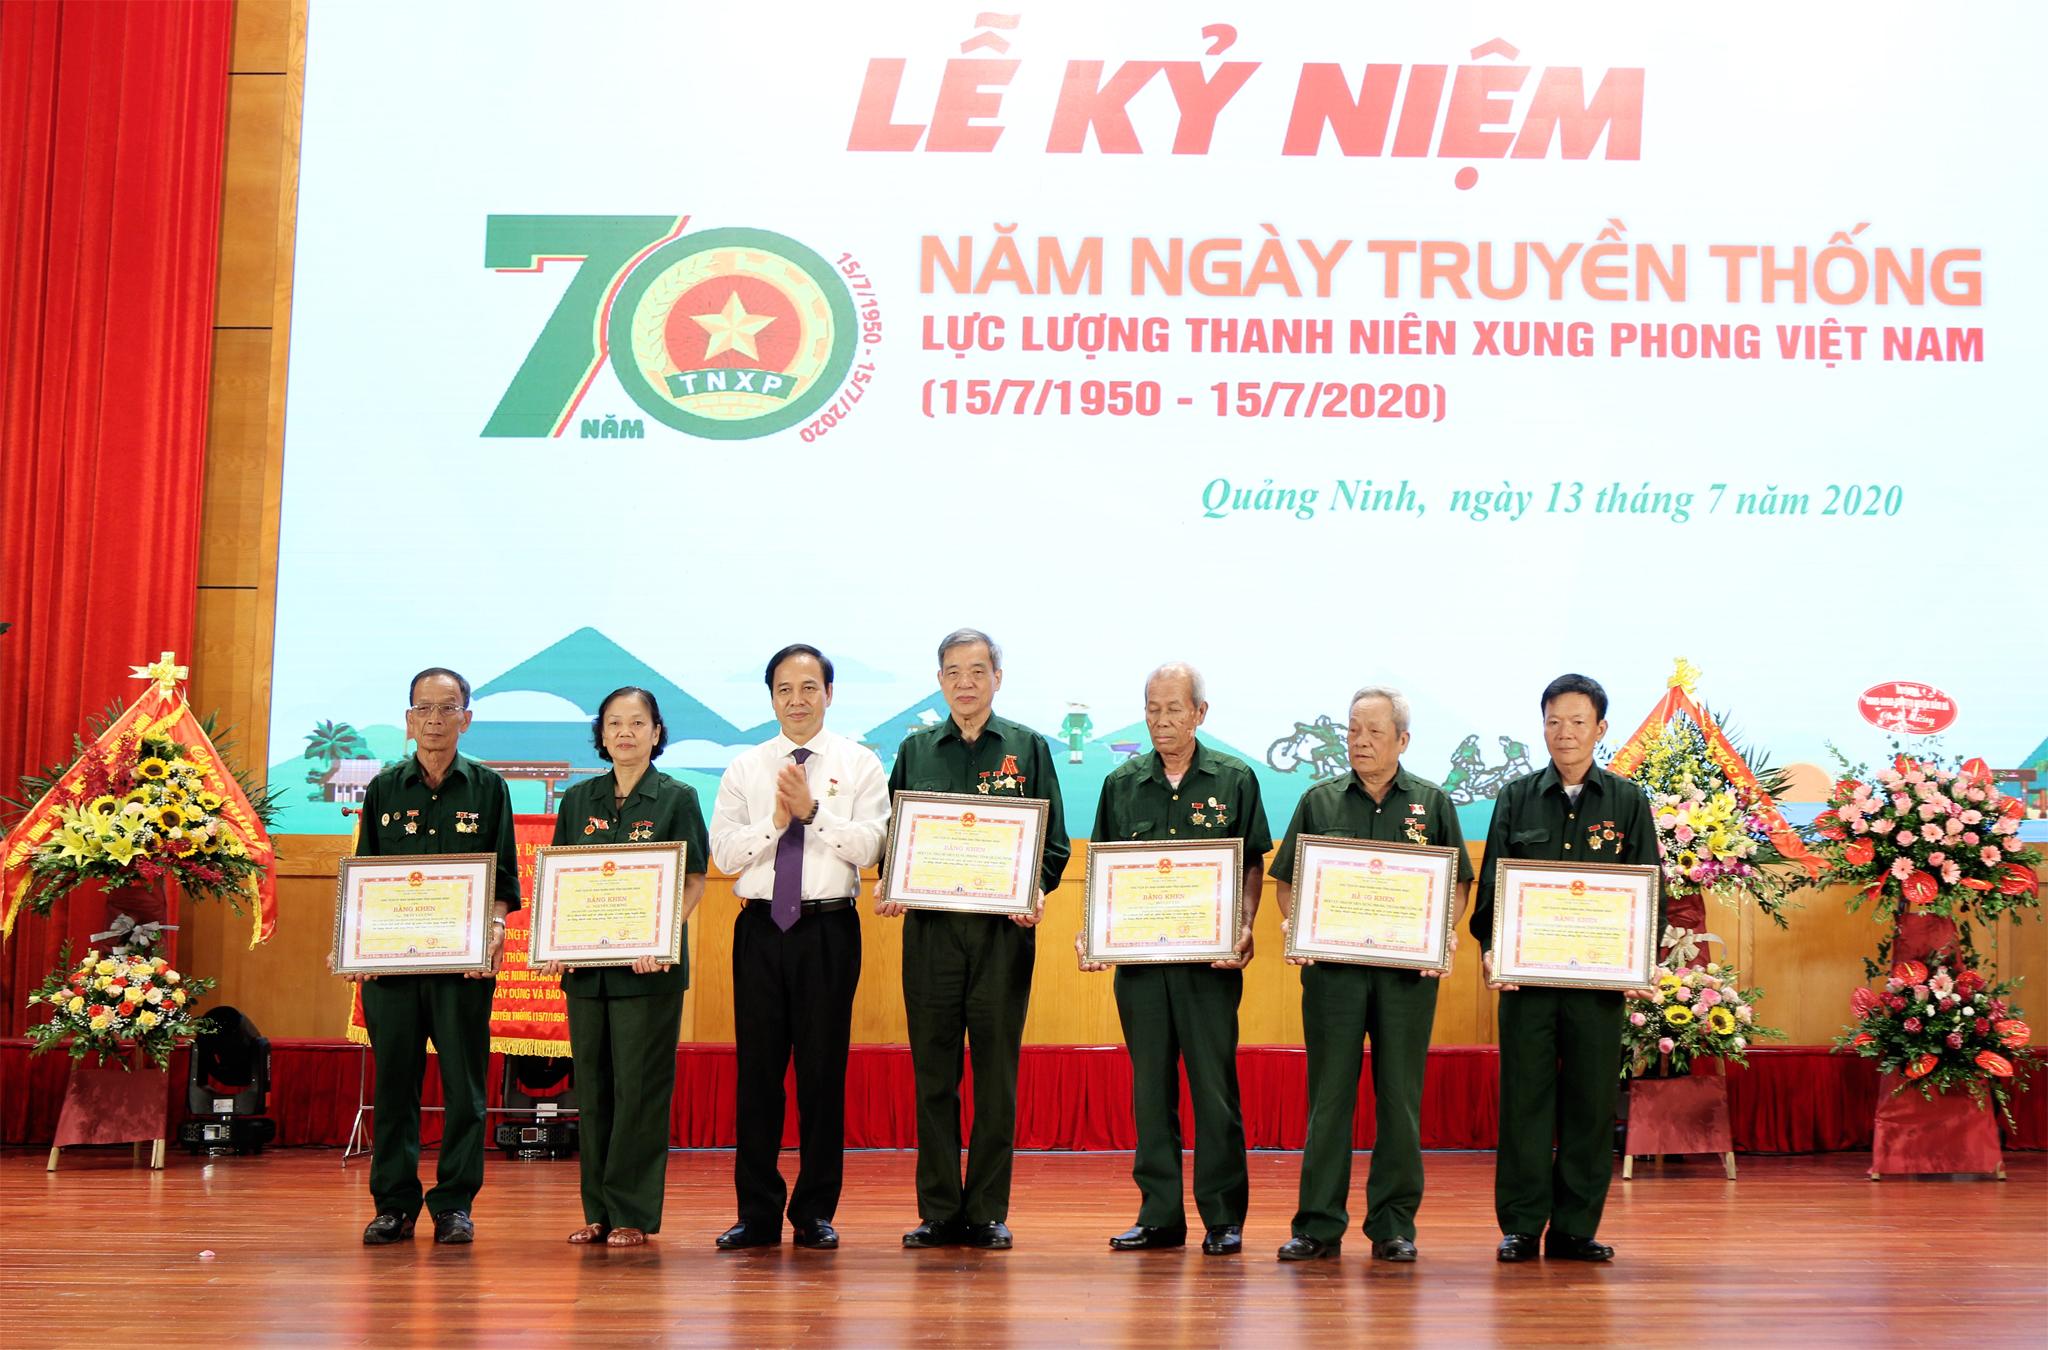 Ủy ban nhân dân tỉnh Quảng Ninh tặng bằng khen cho 6 tập thể và cá nhân có thành tích xuất sắc trong công tác Hội và phong trào thanh niên xung phong